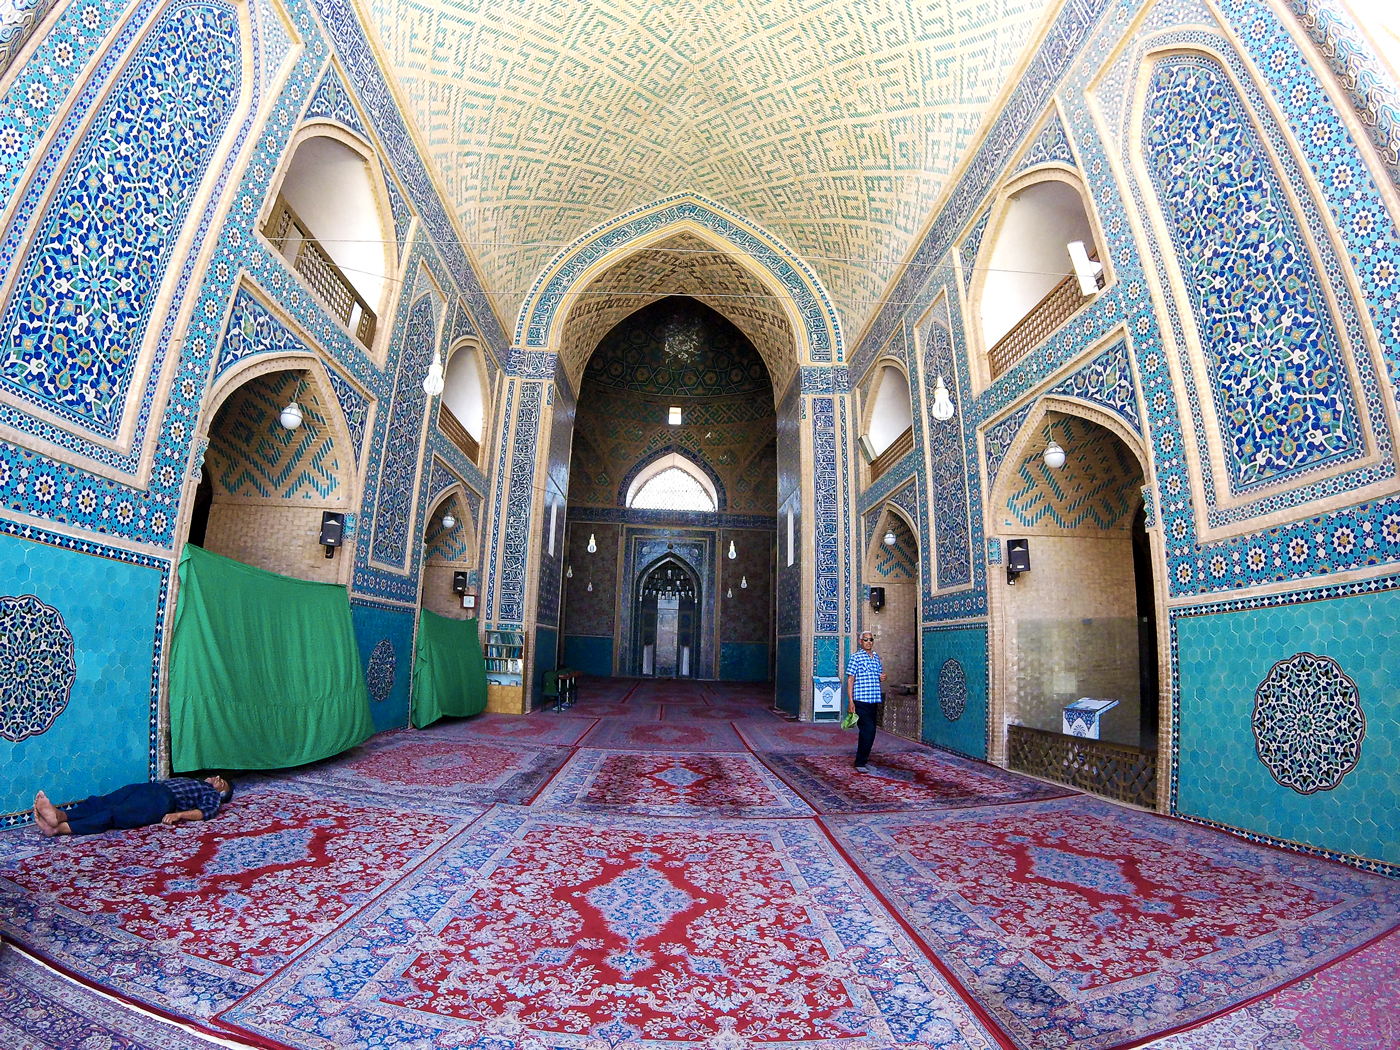 Voyage à vélo, traverser l'Iran à vélo, Grande Mosquée d'Yazd ou mosquée Jameh. Cycling travel, biketouring, cycling Iran, Jameh mosque of Yazd.